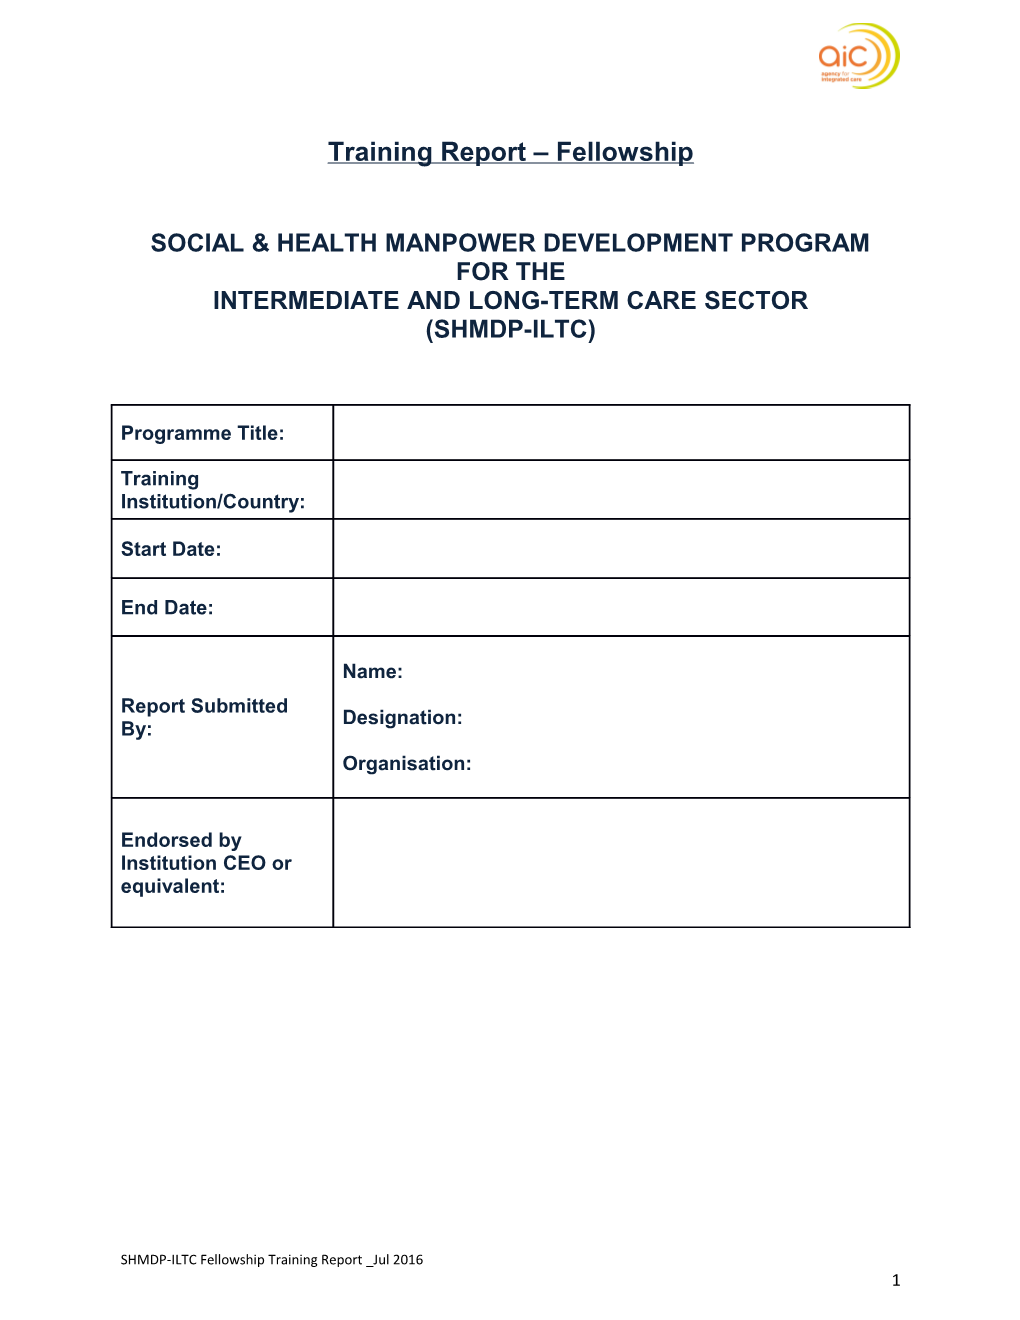 Social & Health Manpower Development Program for The